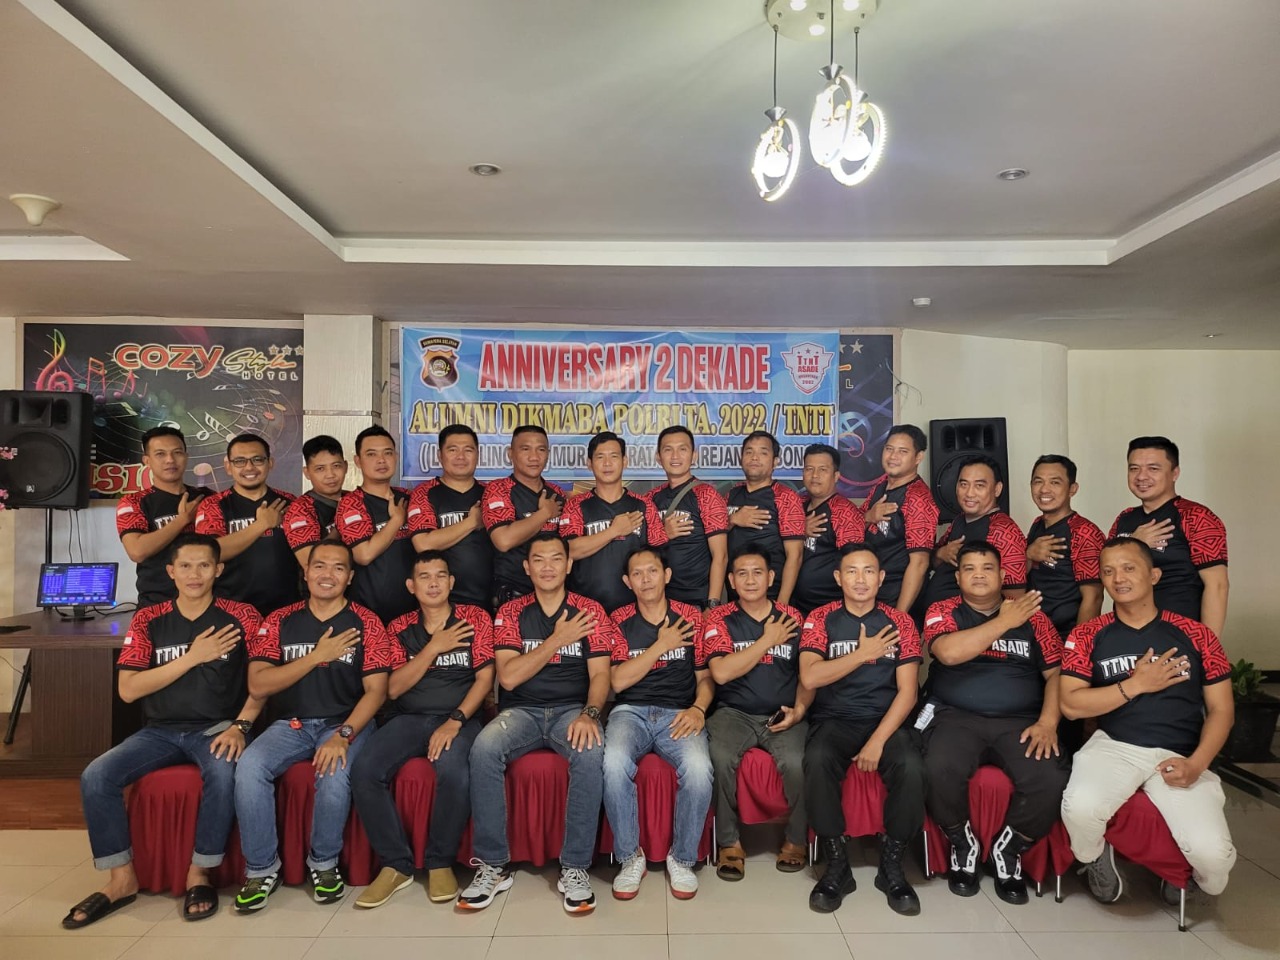 Alumni Dikmaba Polri Angkatan 2002, Berdinas di Mura, Linggau, Muratara dan Rejang Lebong Gelar Kegiatan Bantuan Sosial